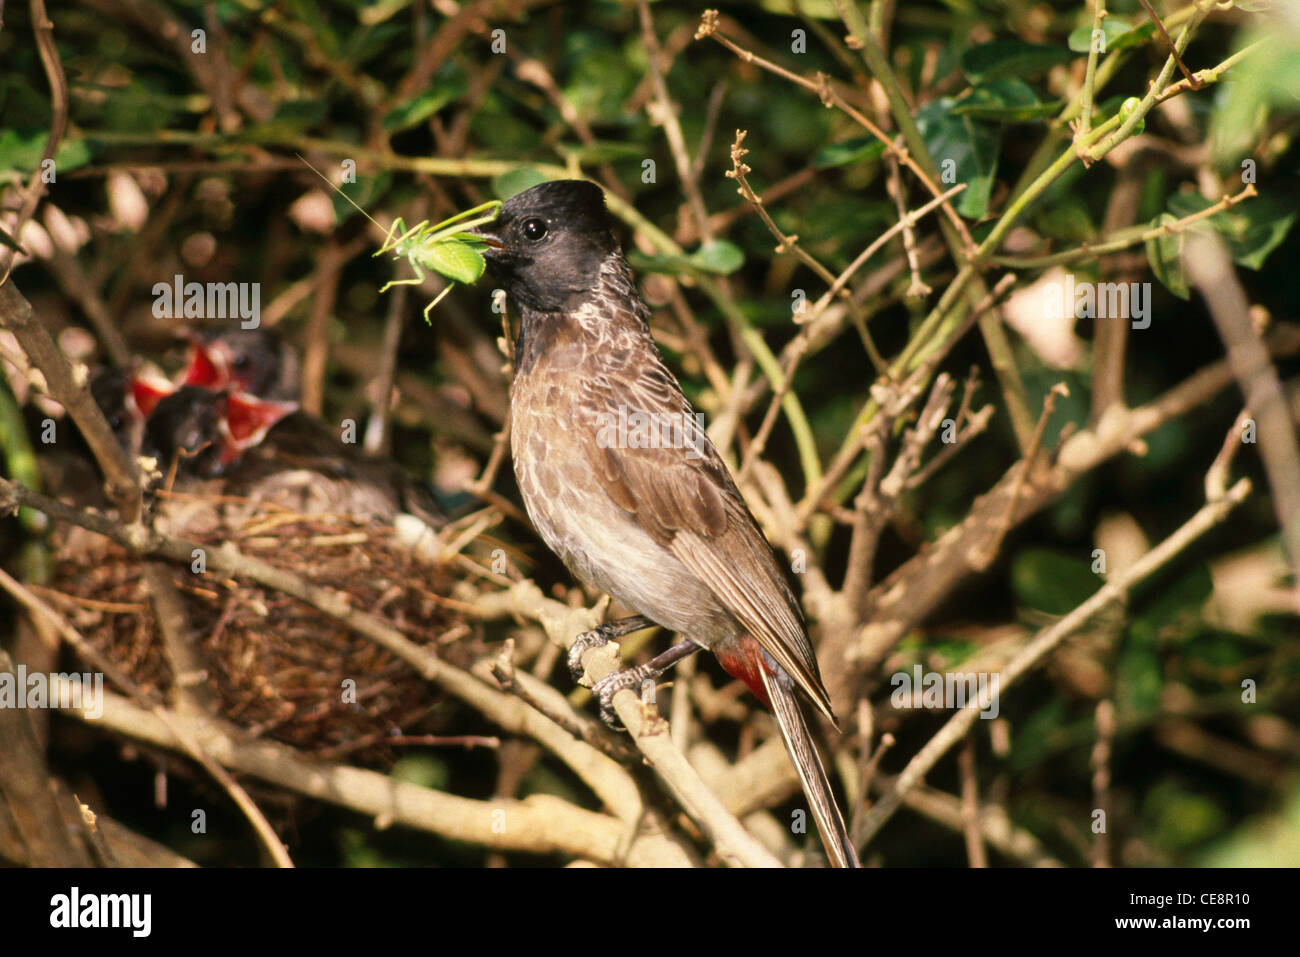 SNA 80413: Vögel Bulbul mit feed Insekt entdeckt Schwätzer in der Nähe von Nest mit jungen diejenigen Pellorneum Ruficeps Swainson Stockfoto